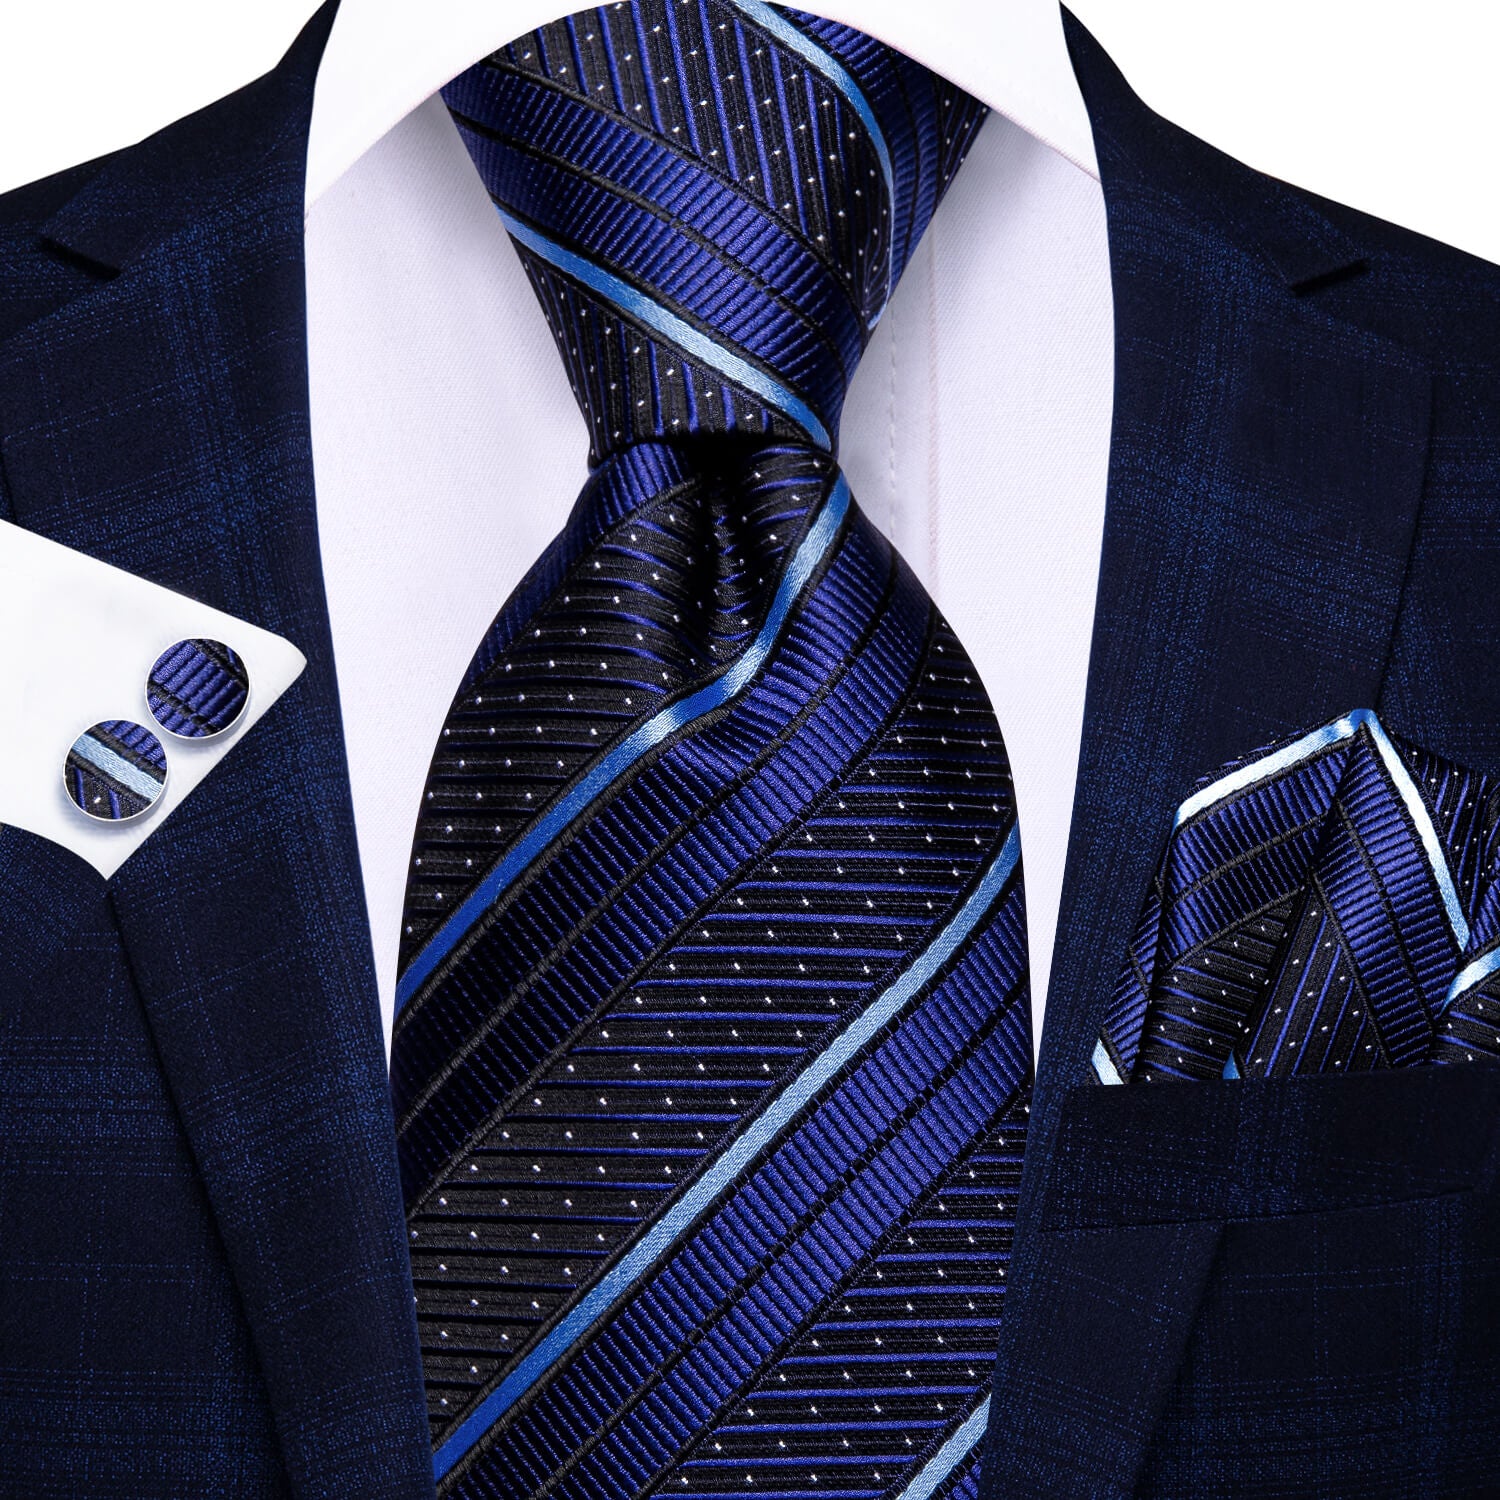 Dark Blue Tie with White Stripes Pocket Square Cufflinks Set